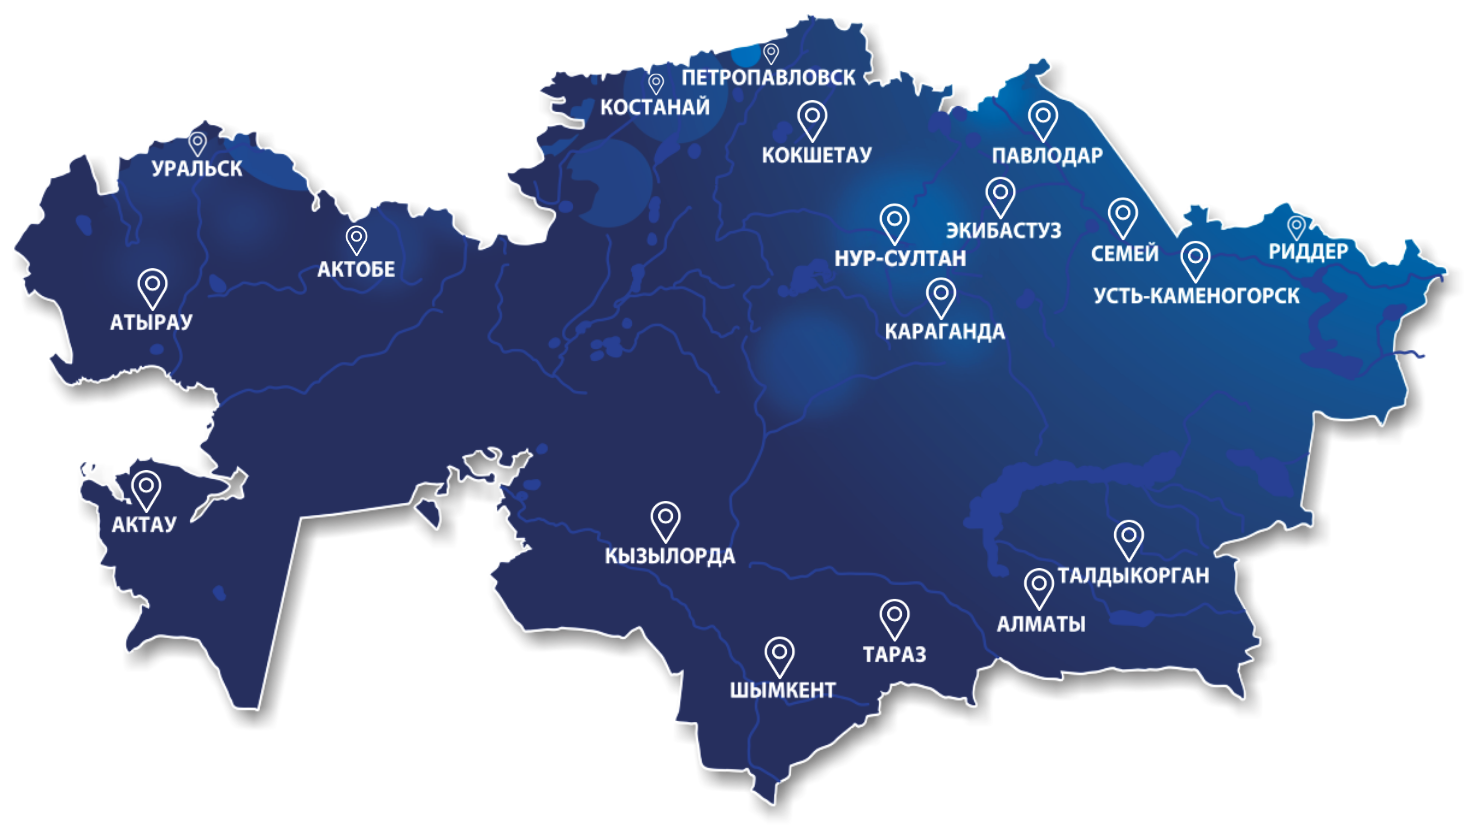 Данные карты казахстана. Казахстан на карте. Карта Казахстана по городам. Карта Республики Казахстан с областями. Карта Казахстана с городами.